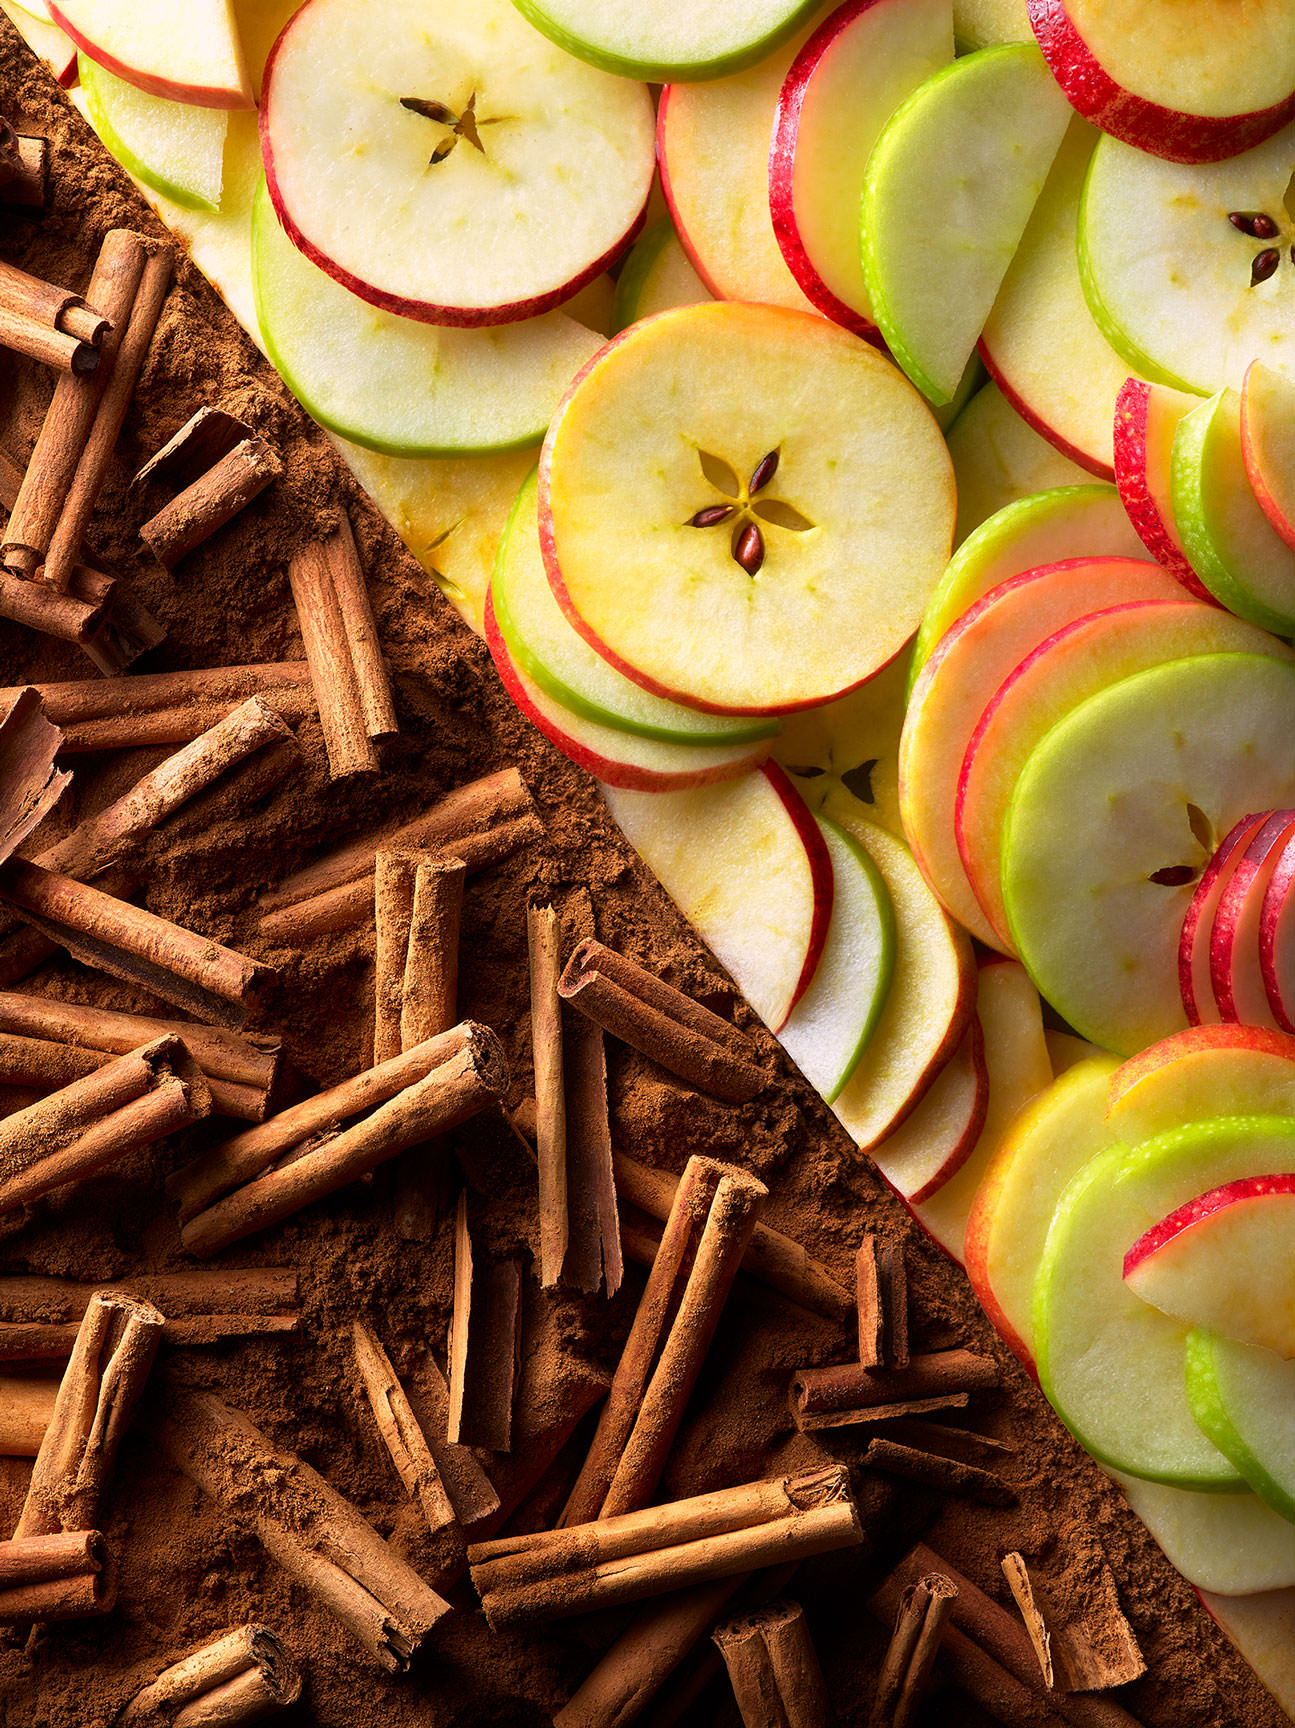 Food pairings - apple slices with cinnamon sticks - London Food & Drinks Photographer